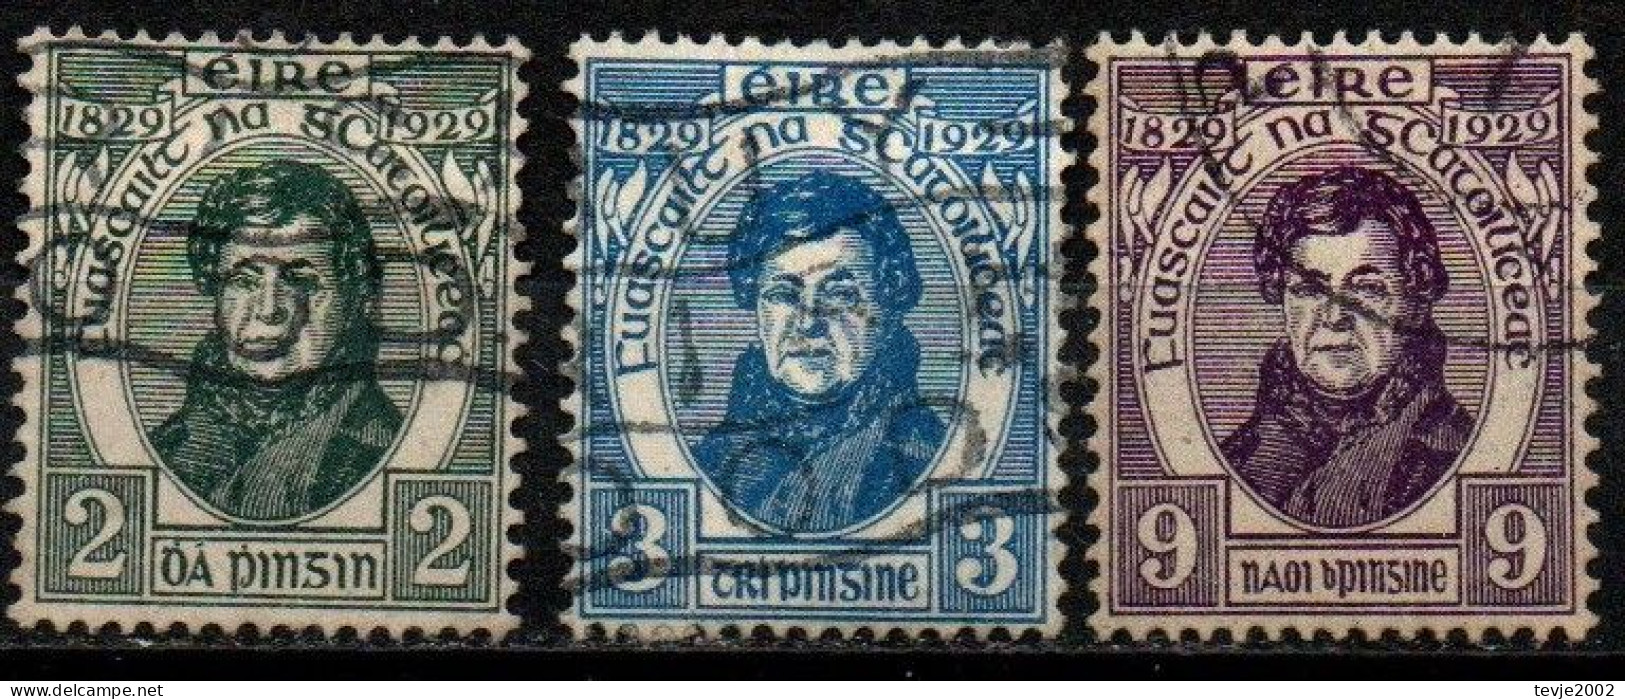 Irland Eire 1929 - Mi.Nr. 52 - 54 - Gestempelt Used - Used Stamps